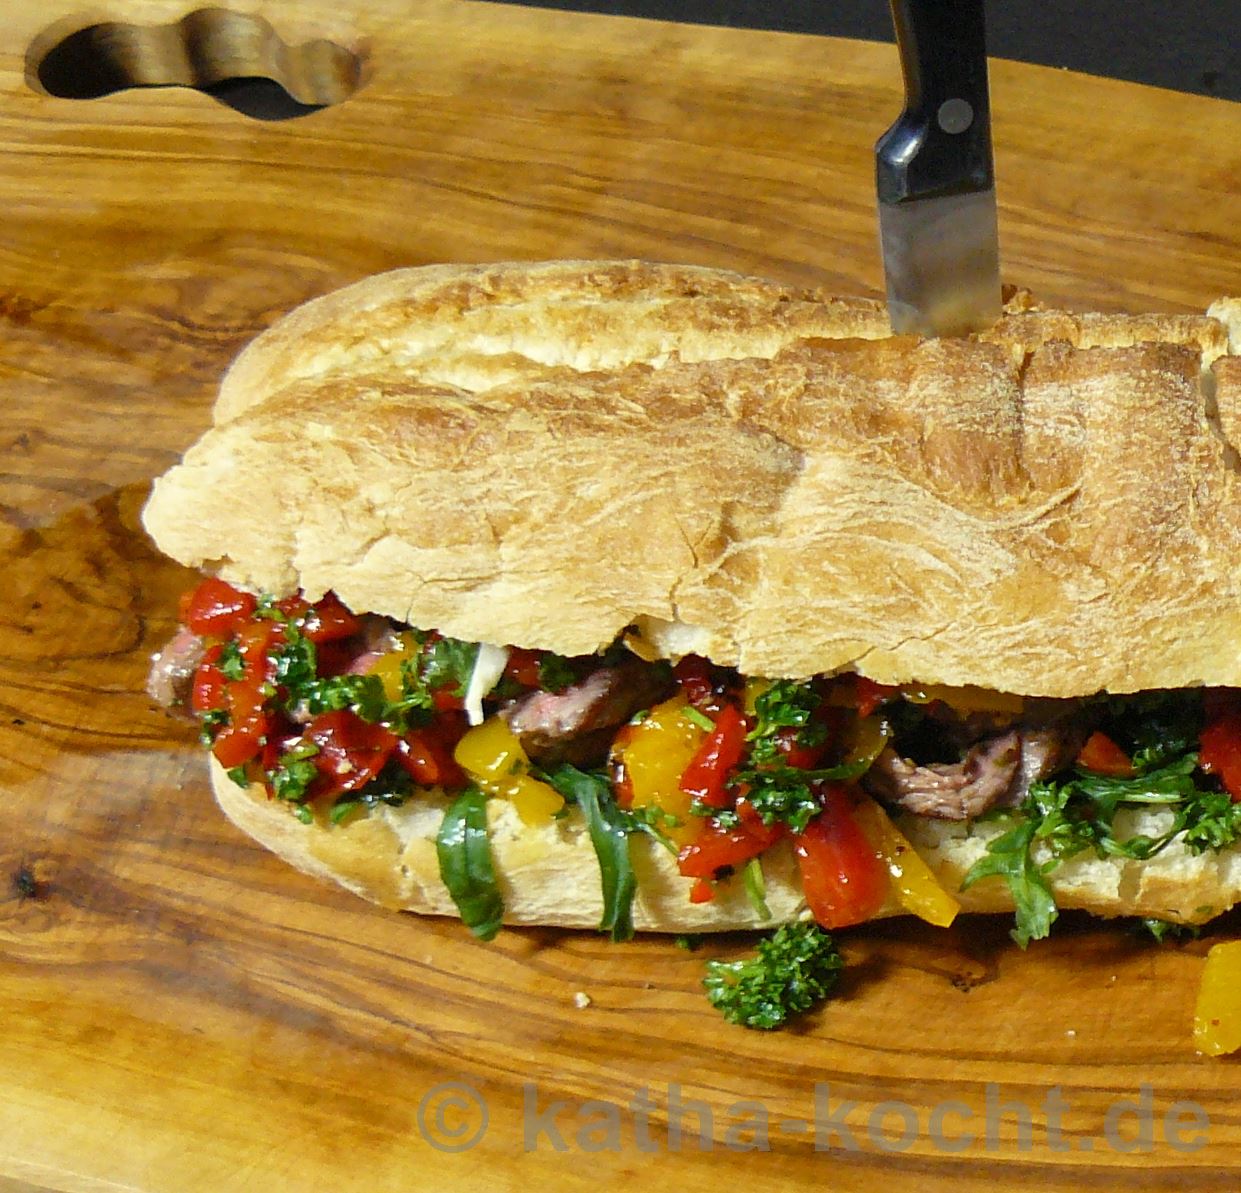 Jamie Oliver's Steak-Sandwich